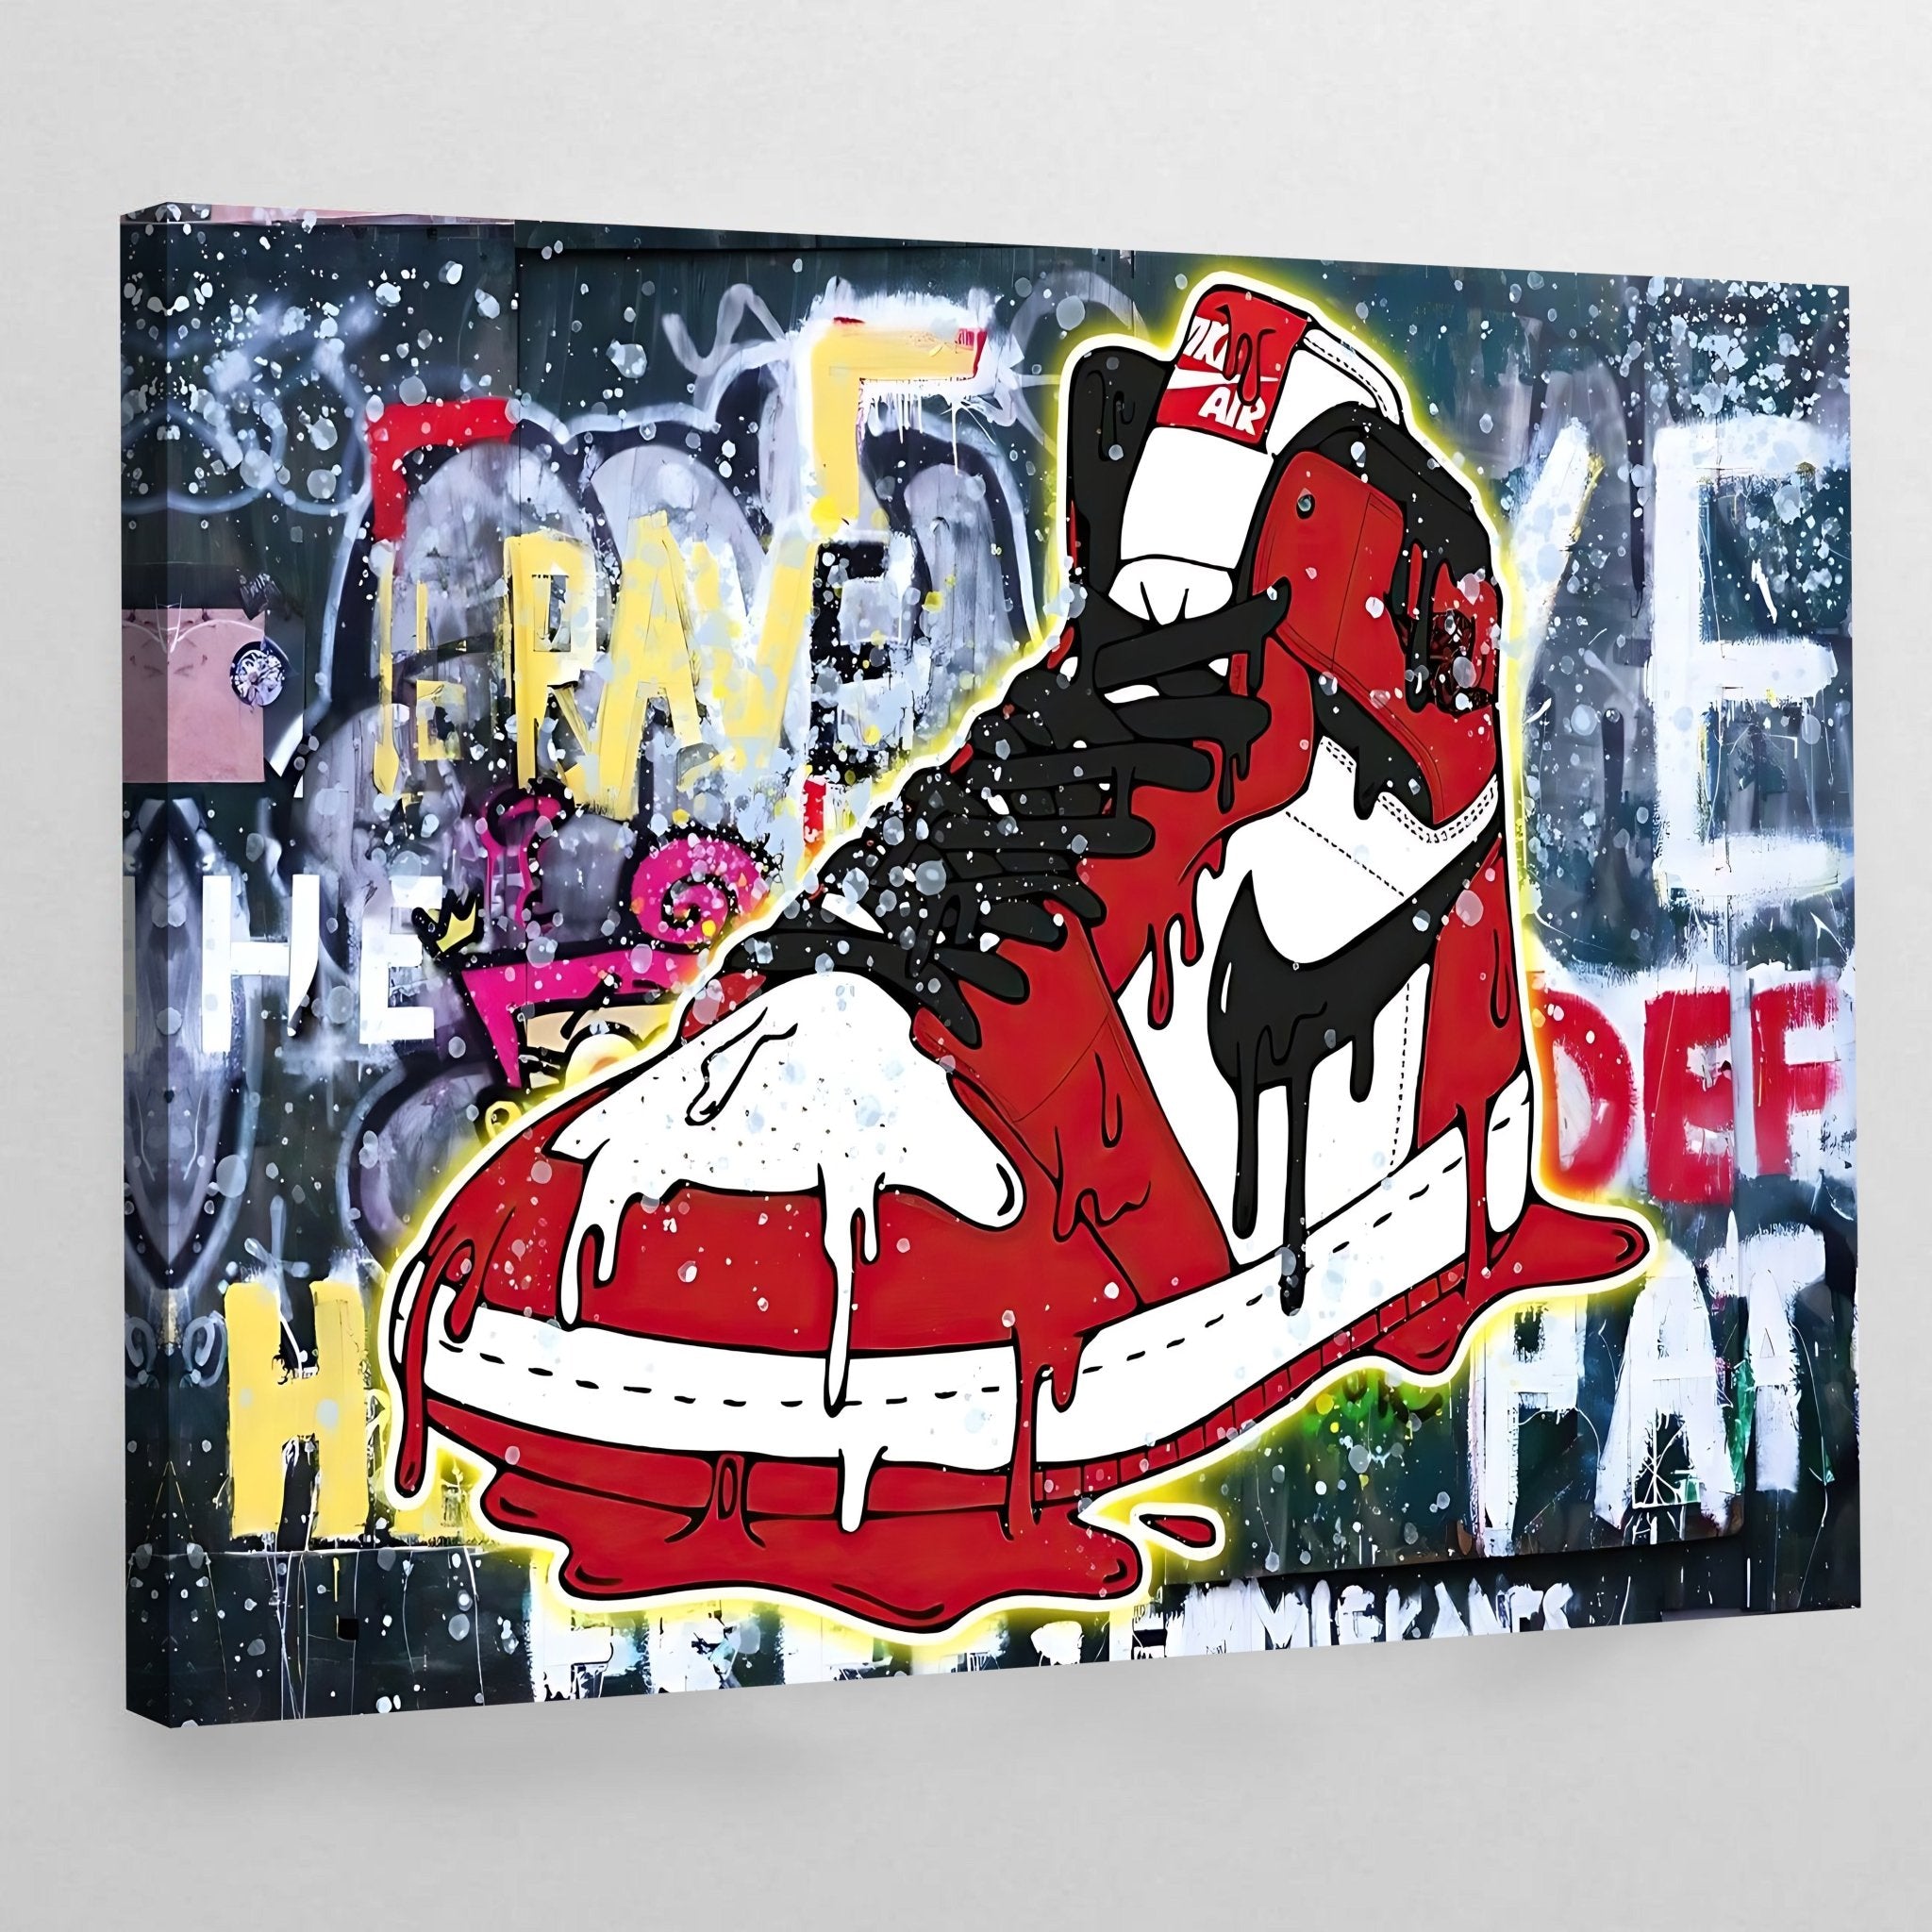 Artwear: The Sneaker Painting [Class in NYC] @ La Pittura Art Studio